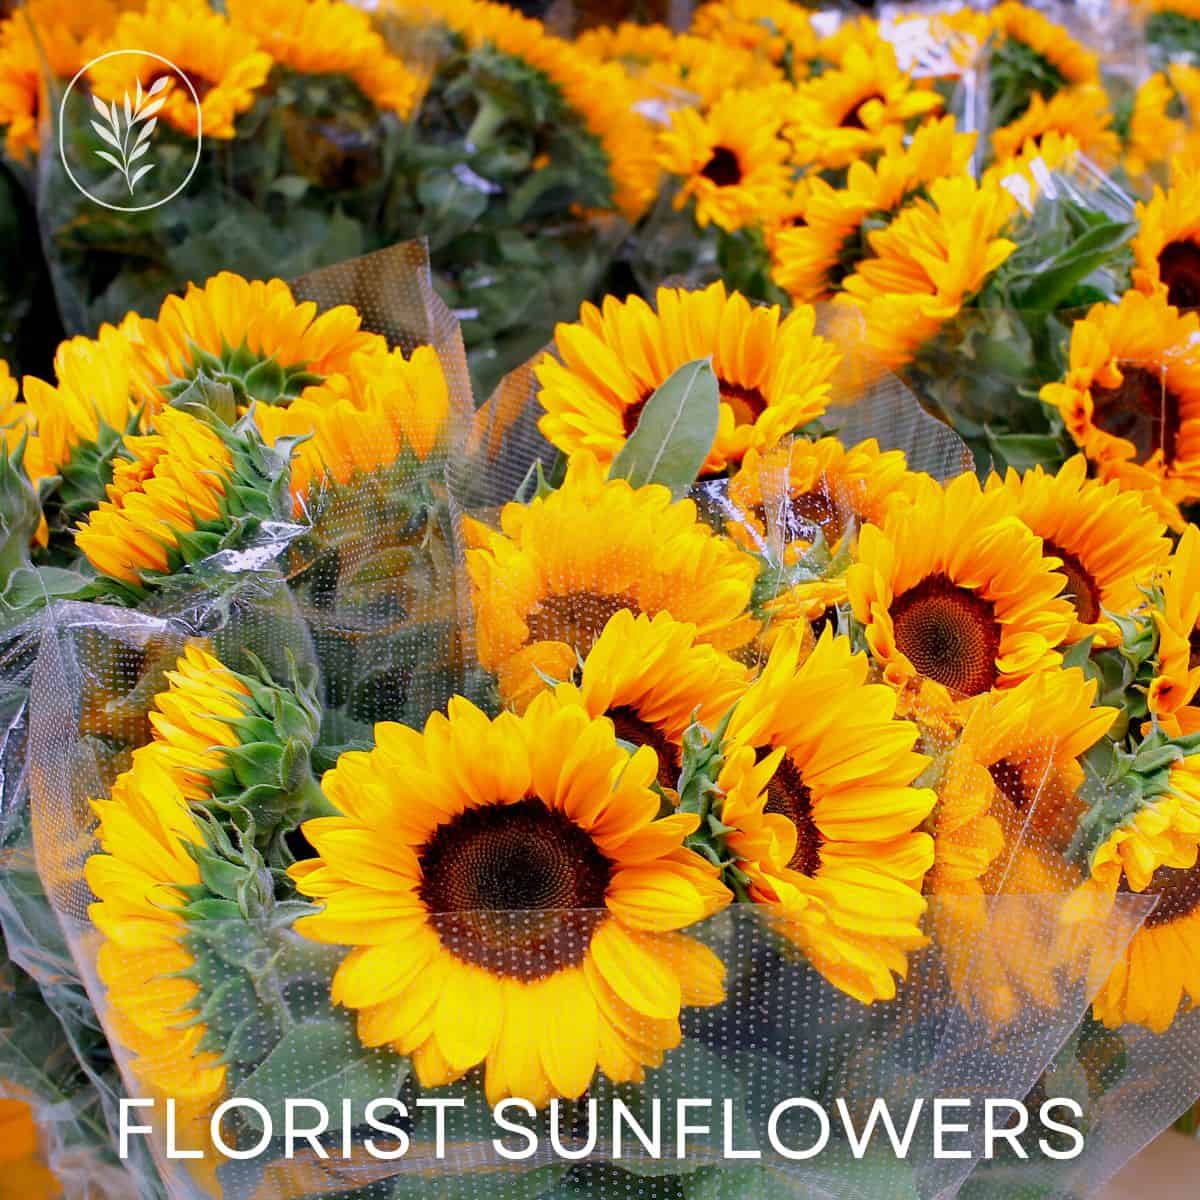 Florist sunflowers via @home4theharvest